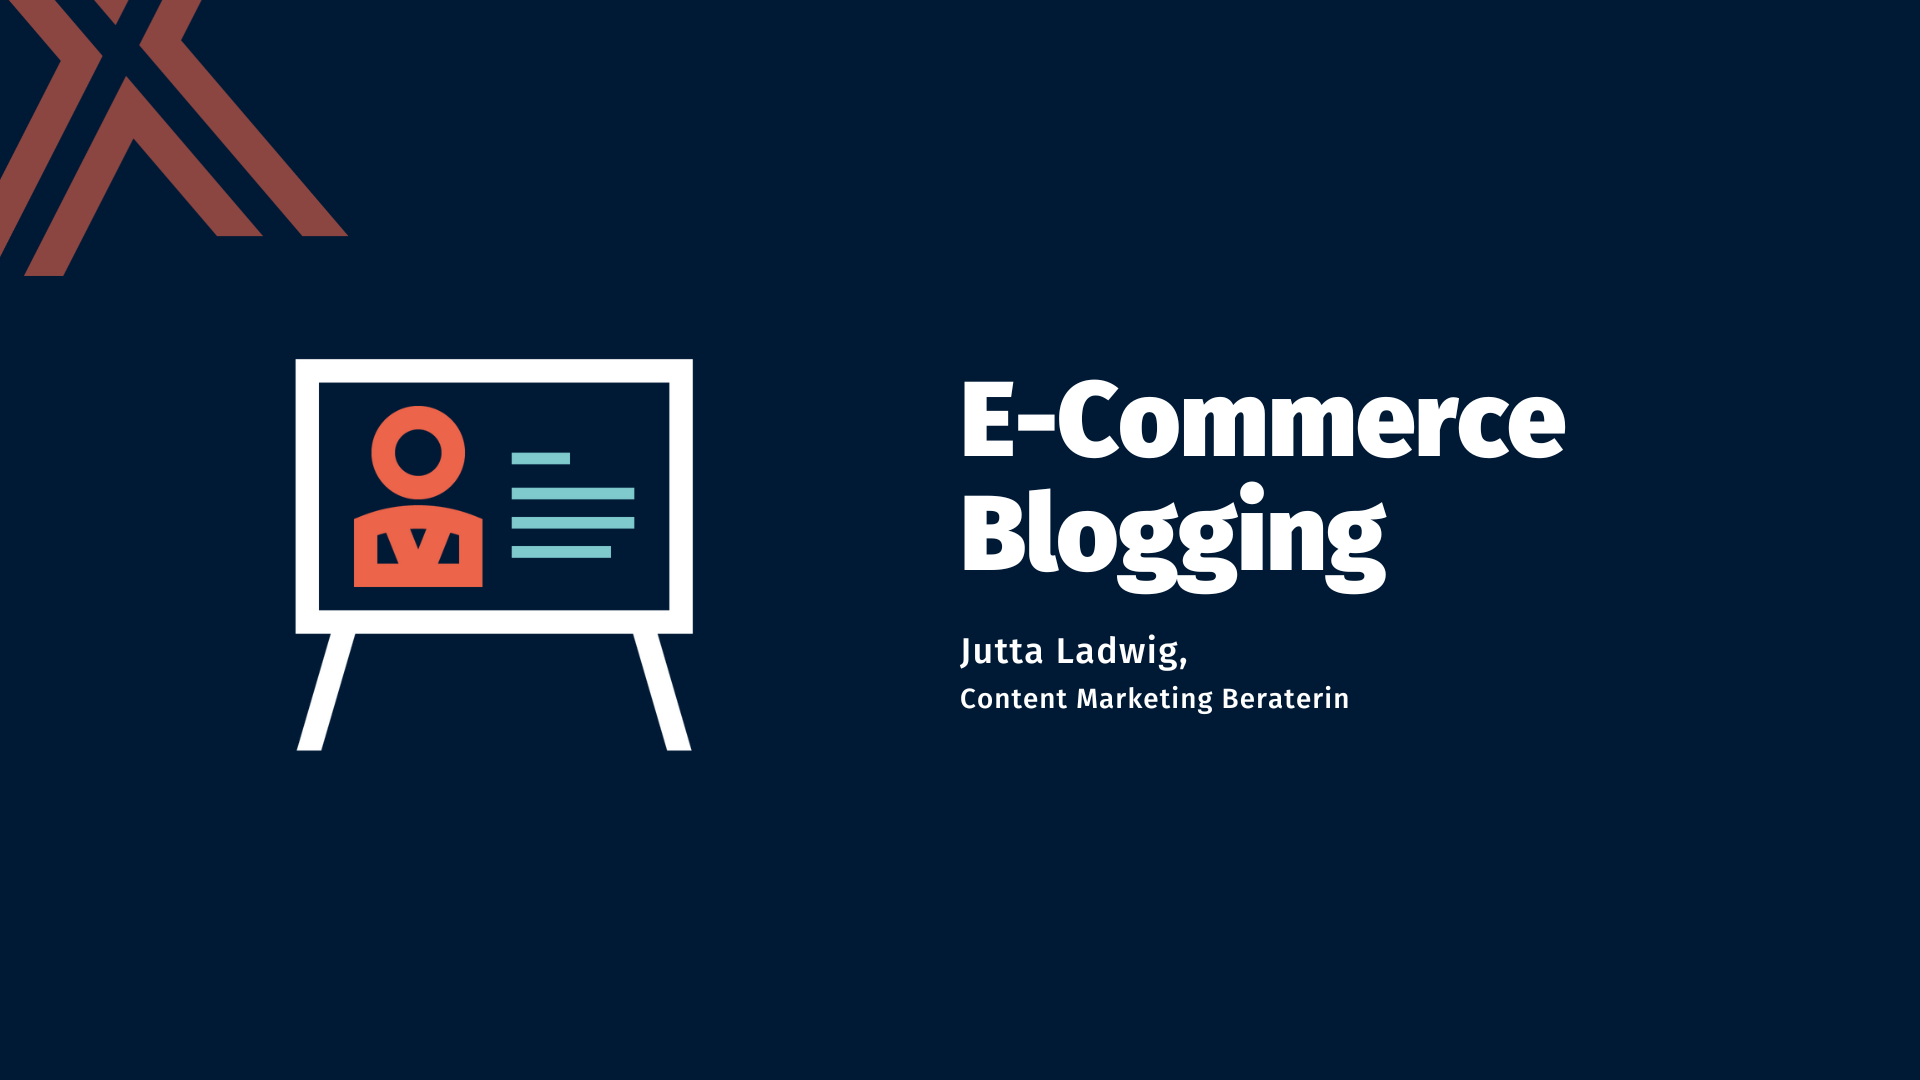 E-Commerce Blogging